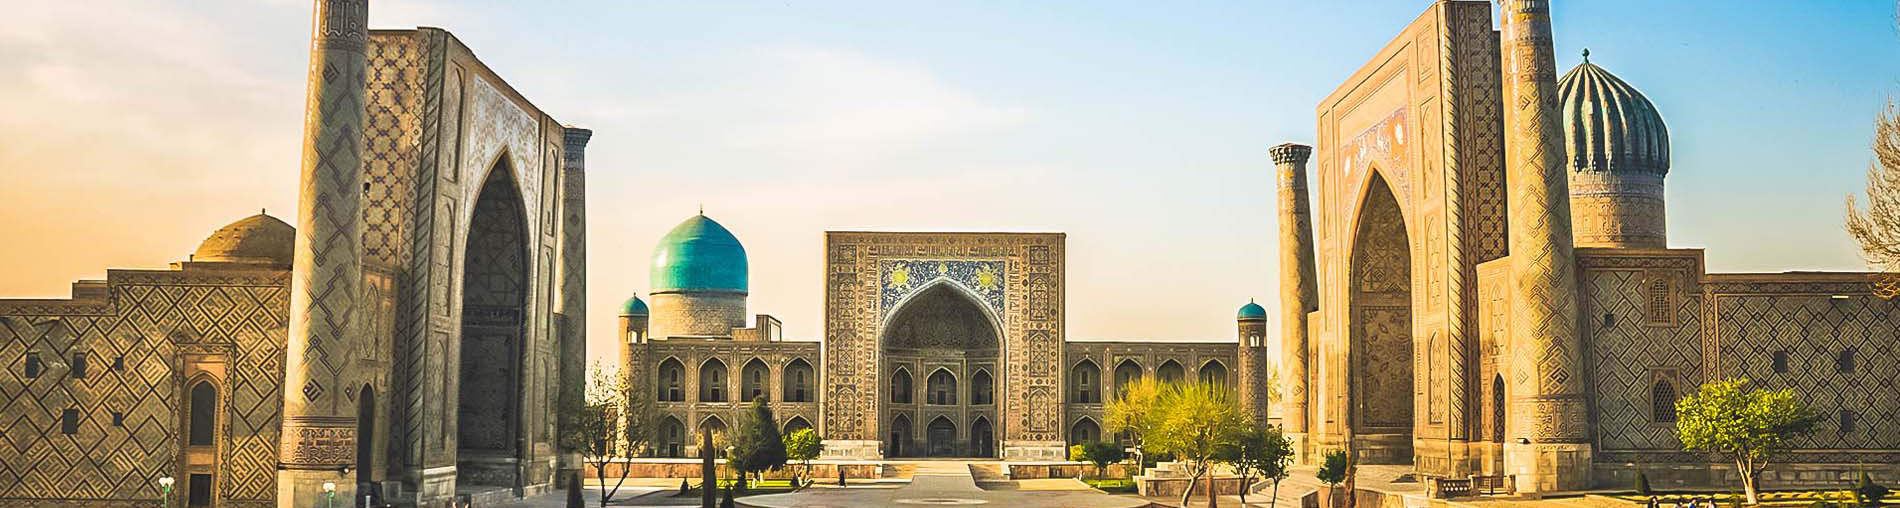 Shopping Spots In Uzbekistan